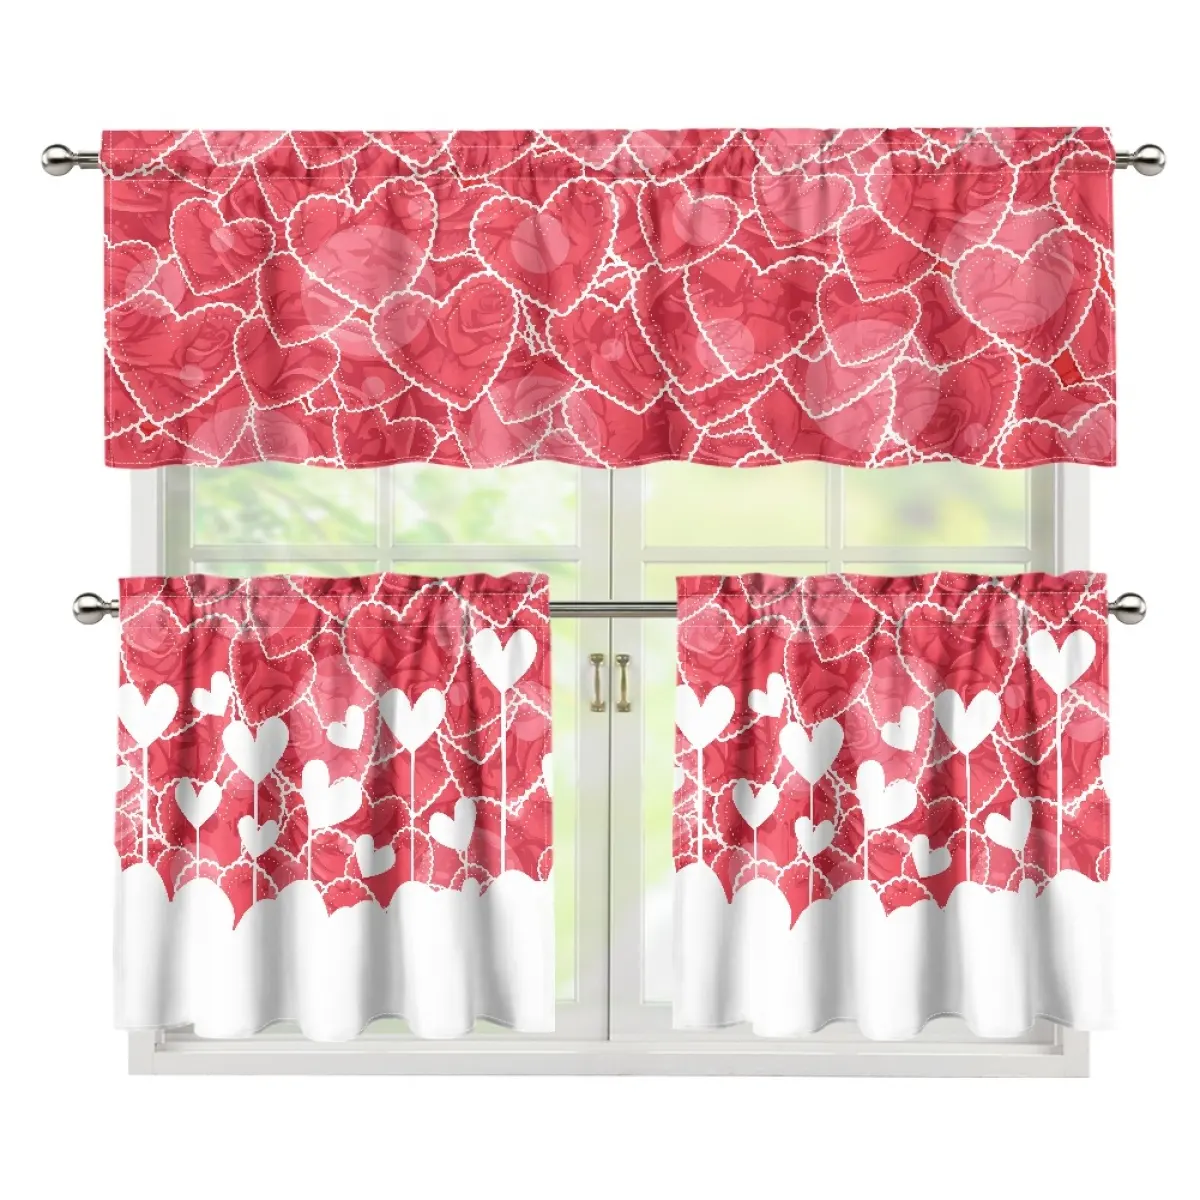 Estilo Europeu personalizado dos Namorados Rosa Cortinas E Valance Set Impressão On Demand Cortinas Conjuntos Adicionar Atmosfera festiva